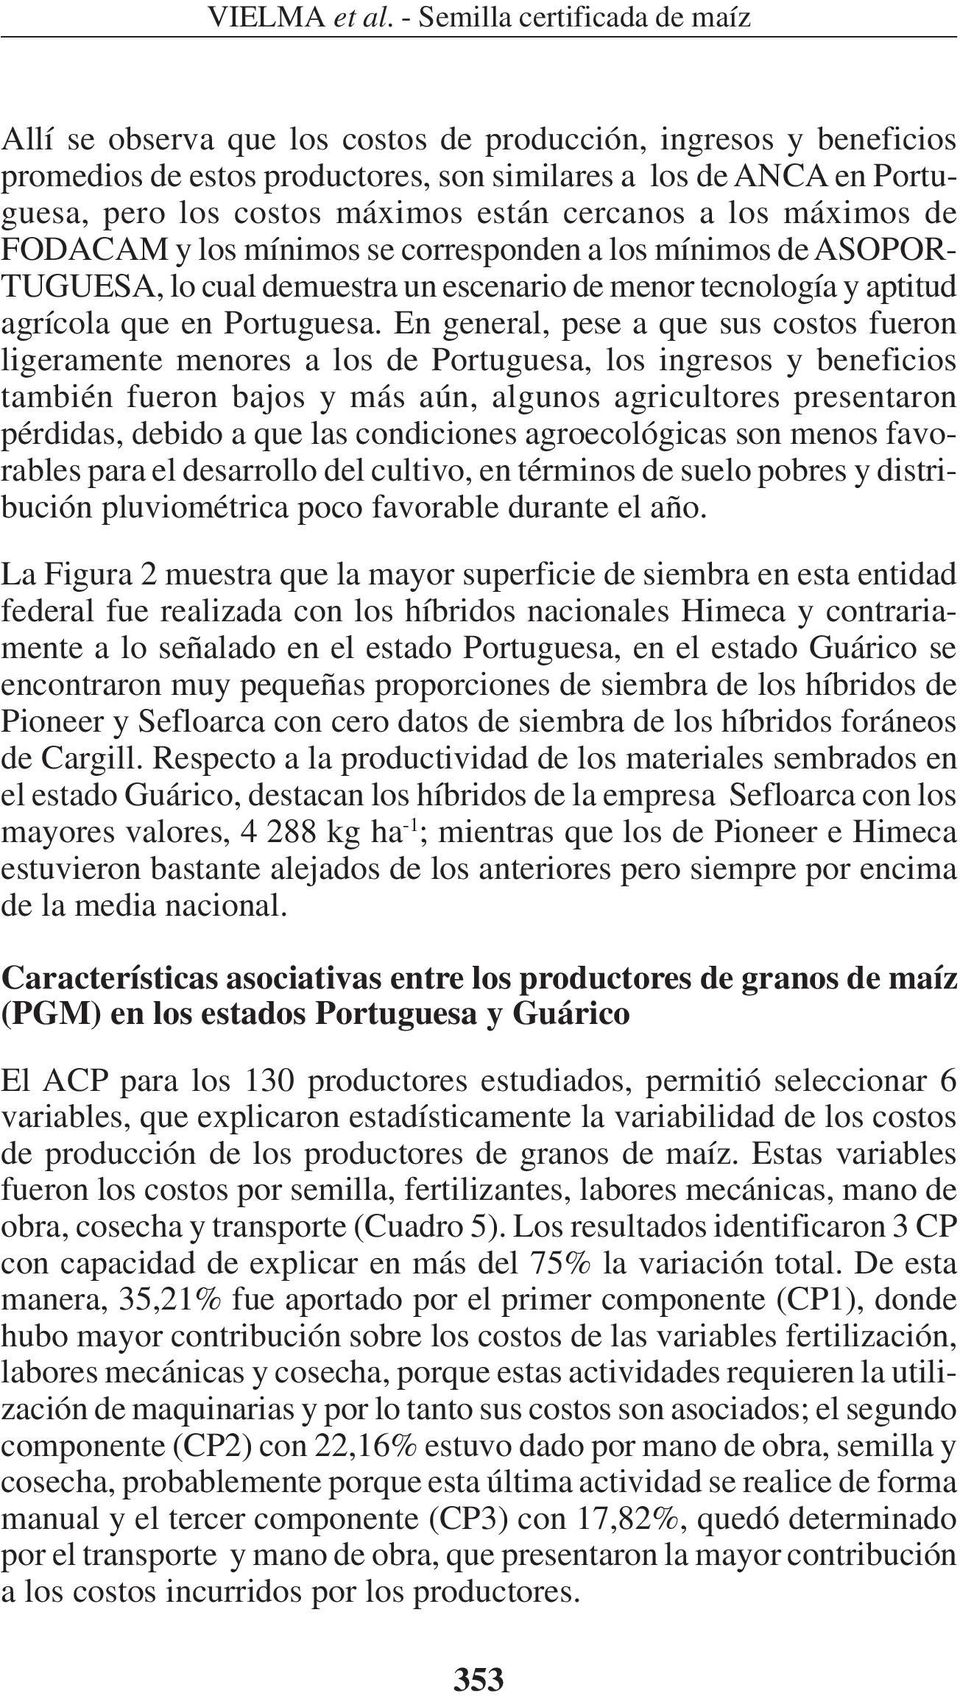 están cercanos a los máximos de FODACAM y los mínimos se corresponden a los mínimos de ASOPOR- TUGUESA, lo cual demuestra un escenario de menor tecnología y aptitud agrícola que en Portuguesa.